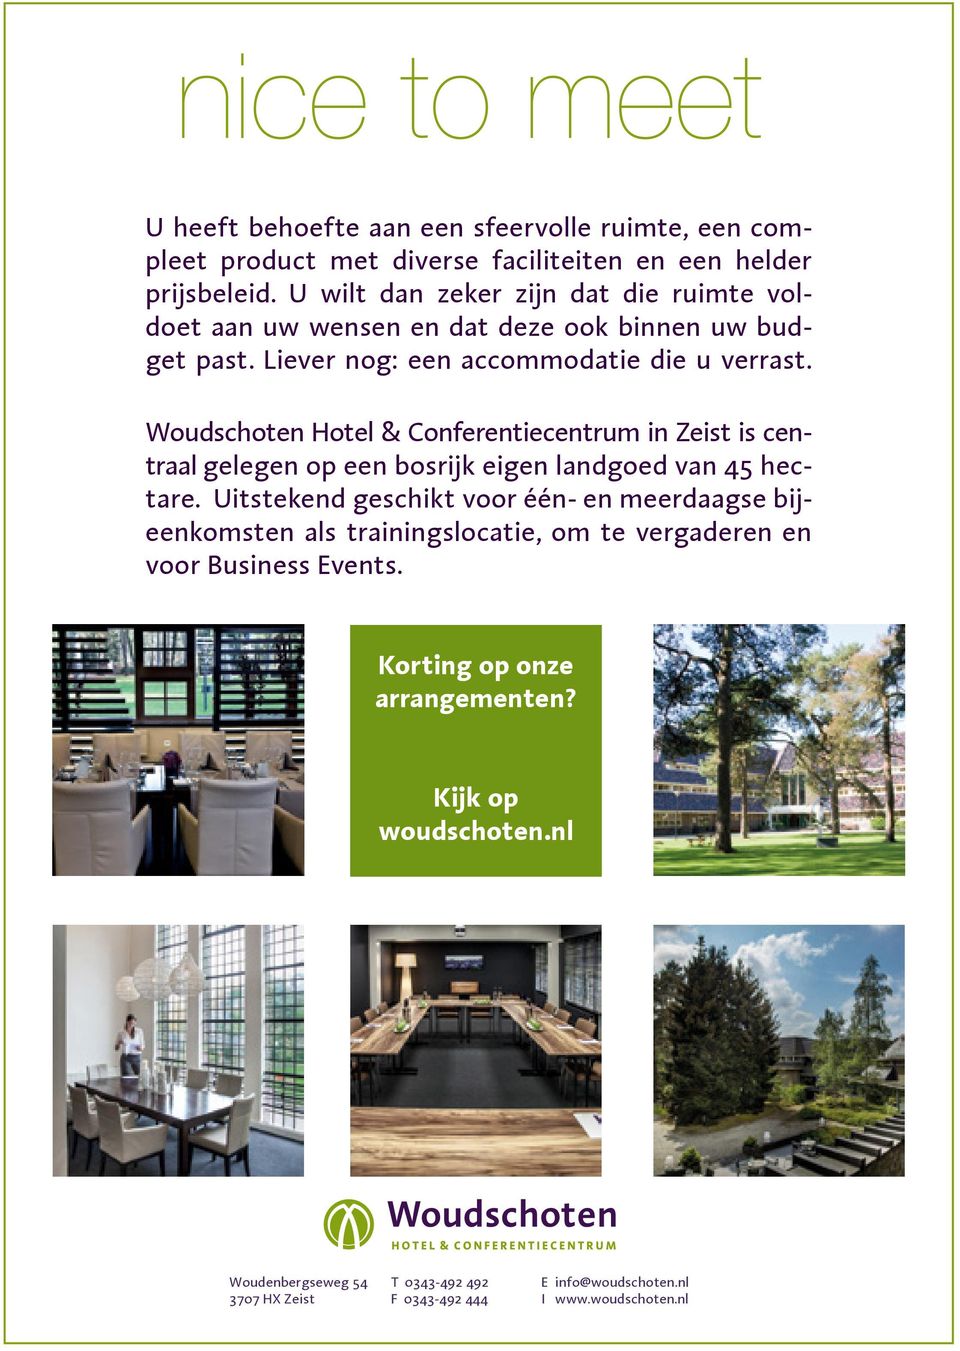 Woudschoten Hotel & Conferentiecentrum in Zeist is centraal gelegen op een bosrijk eigen landgoed van 45 hectare.